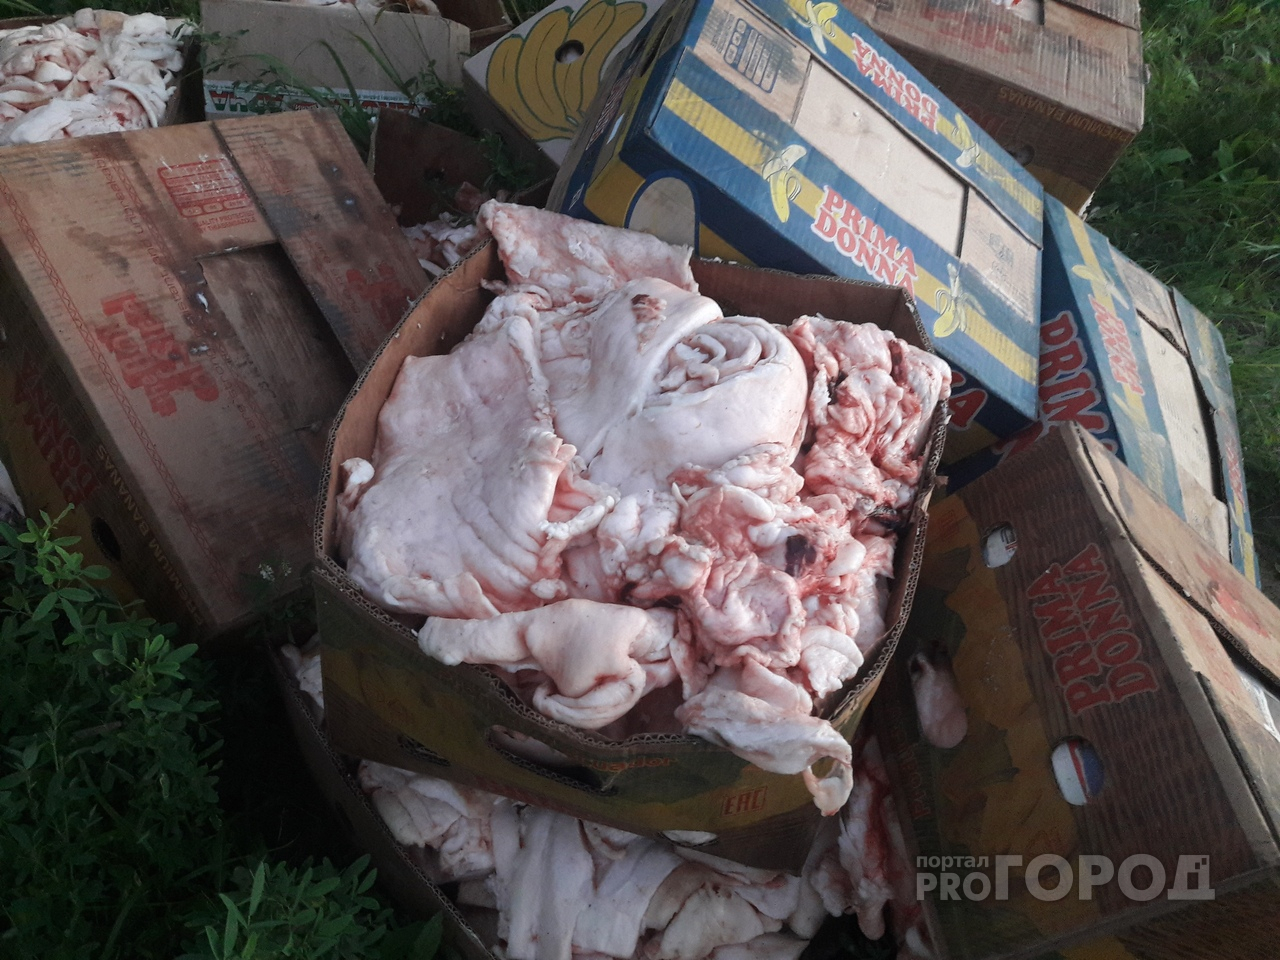 Что грозит «хозяину» мясных отходов, выброшенных на берег Кокшаги в Йошкар-Оле?